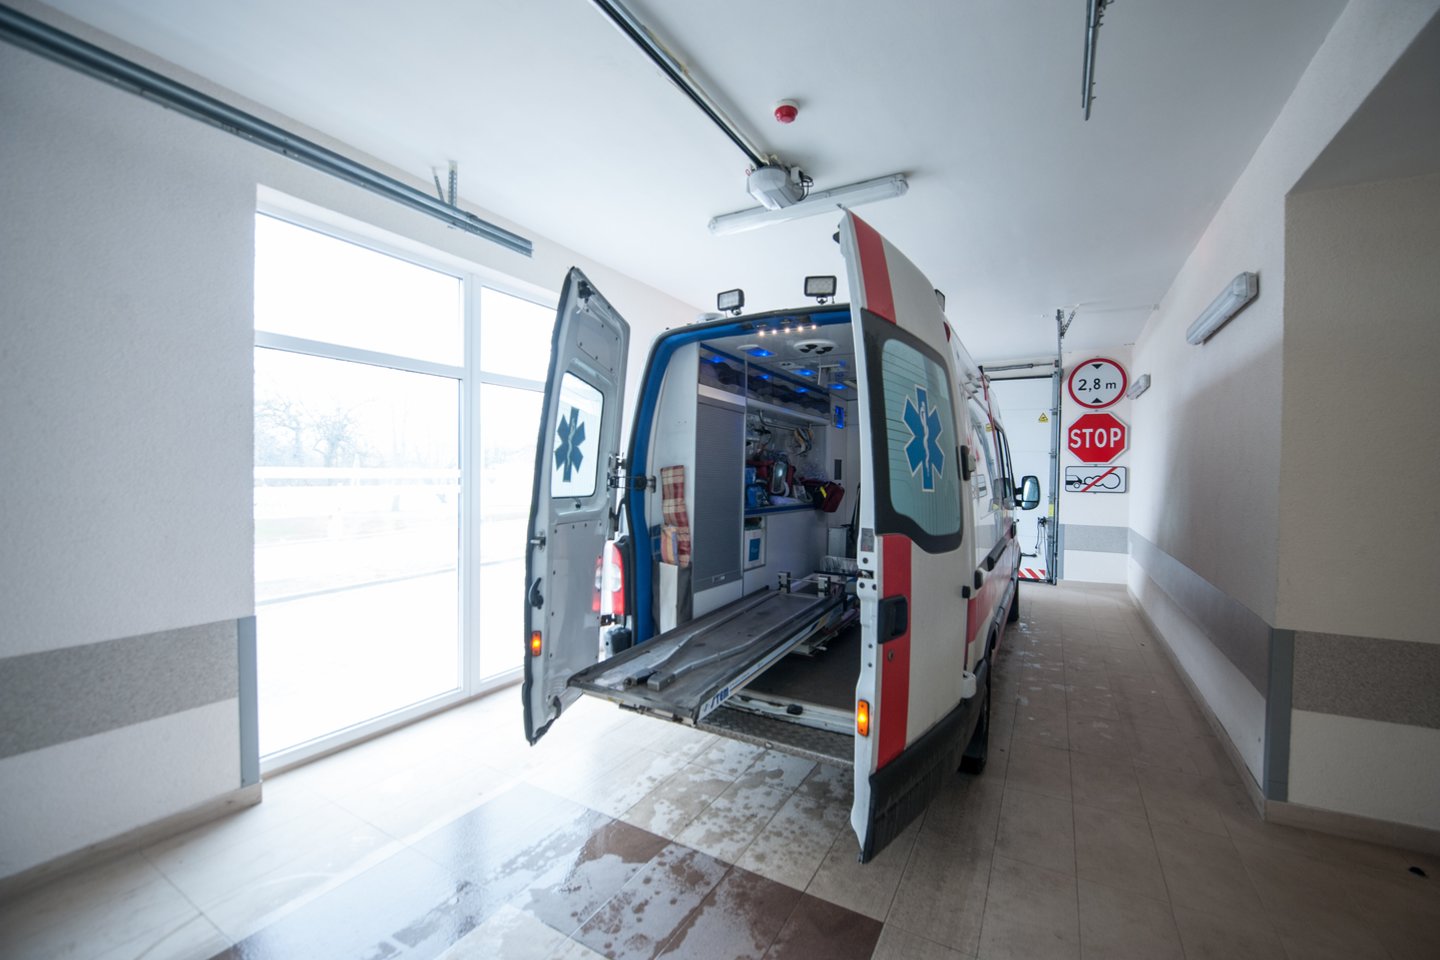 Kauno klinikų reanimacijoje gydoma pro 4 aukšto langą iškritusi 14-metė ukrainietė. <br>V.Ščiavinsko asociatyvi nuotr.